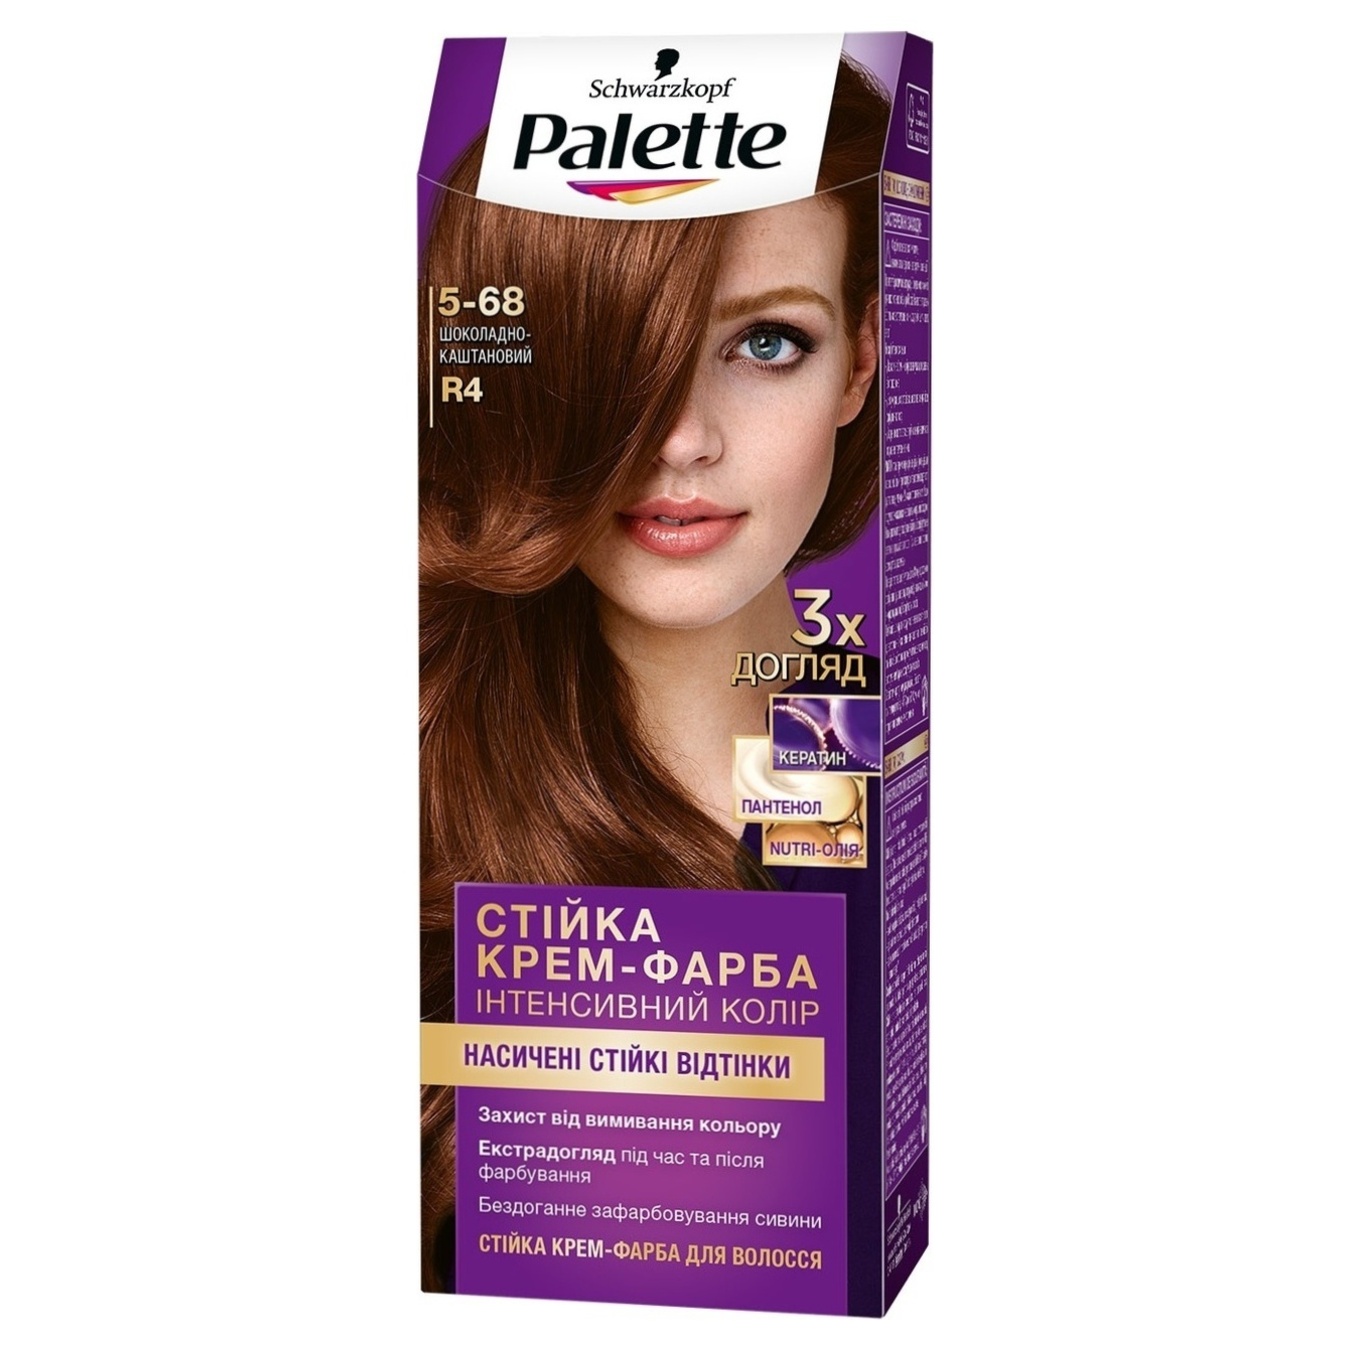 Permanent cream-dye for hair Palette Intense color Rf4 Chestnut 110ml